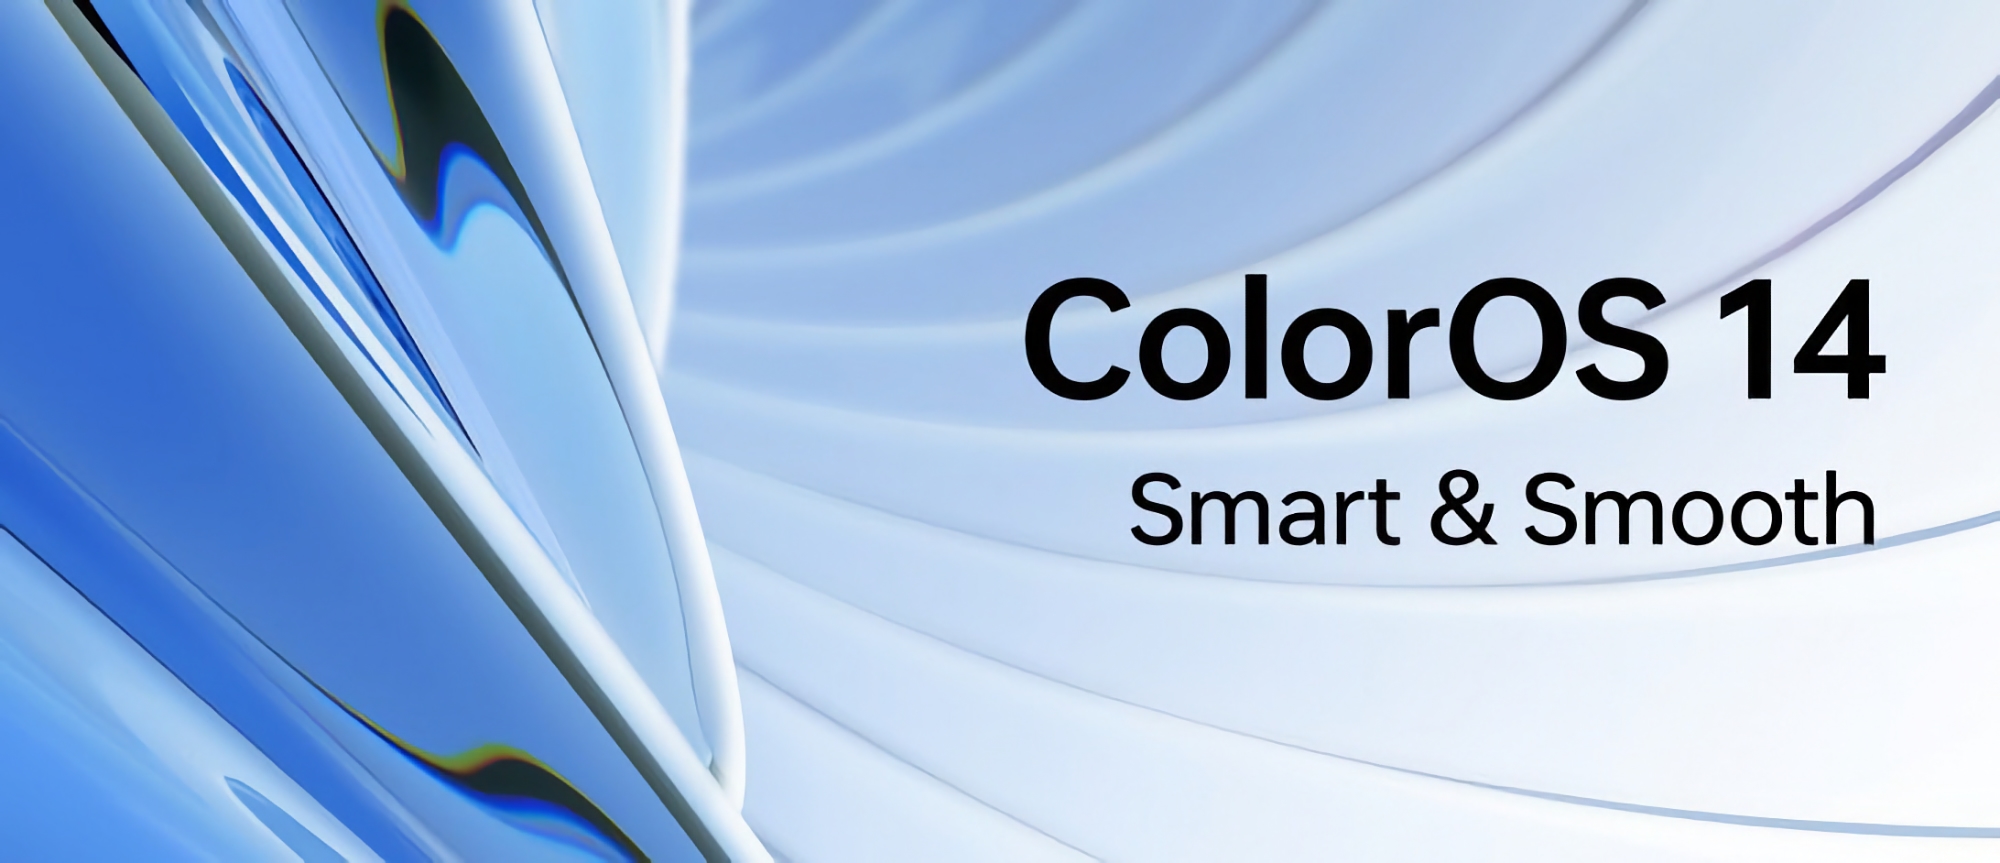 När och vilka OPPO-enheter kommer att få ColorOS 14 på den globala marknaden